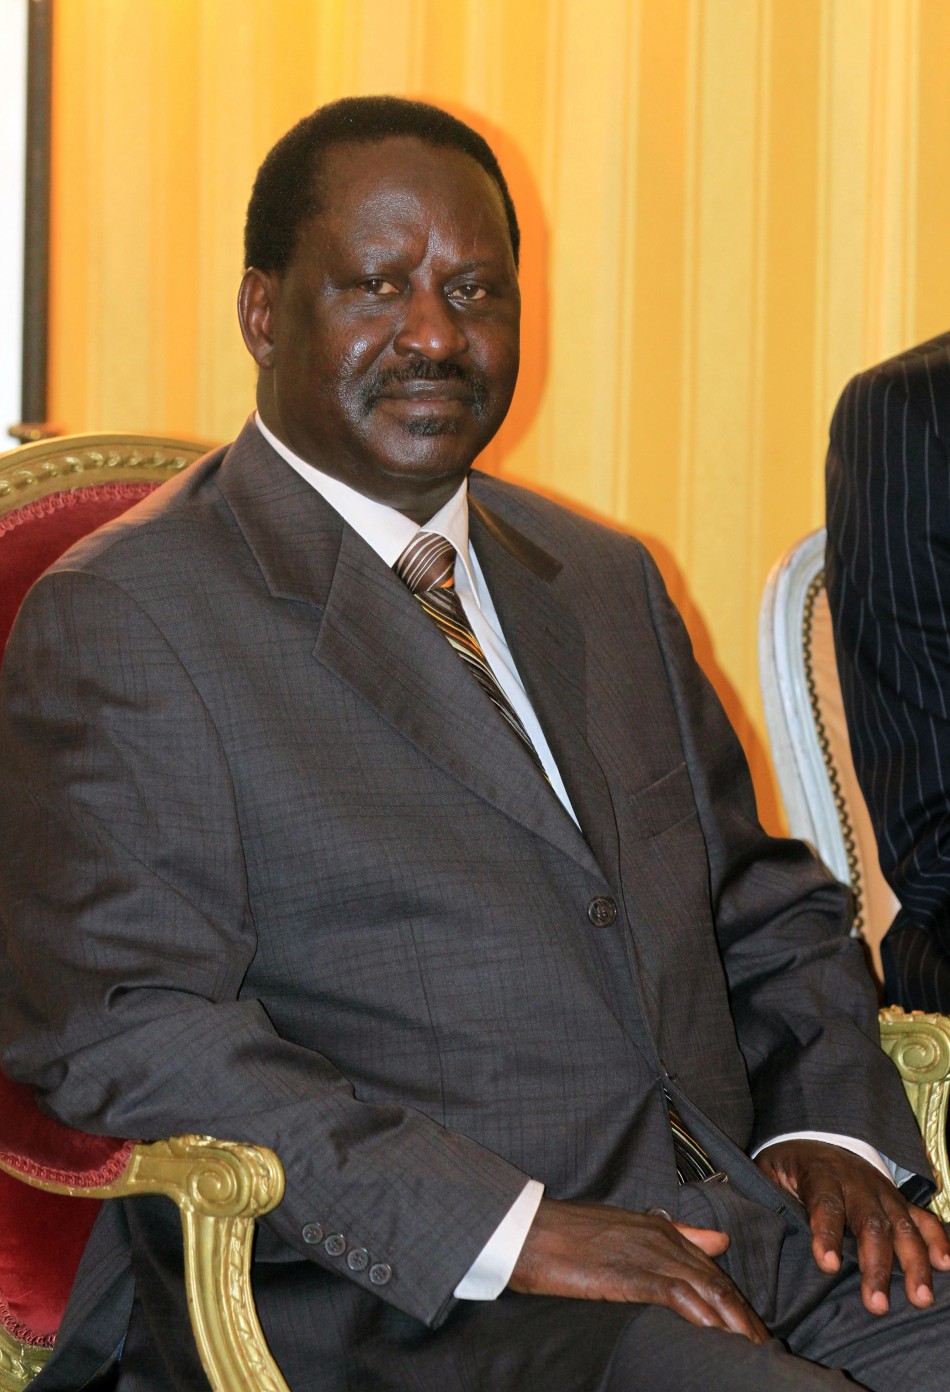 Kenyas Prime Minister Raila Odinga